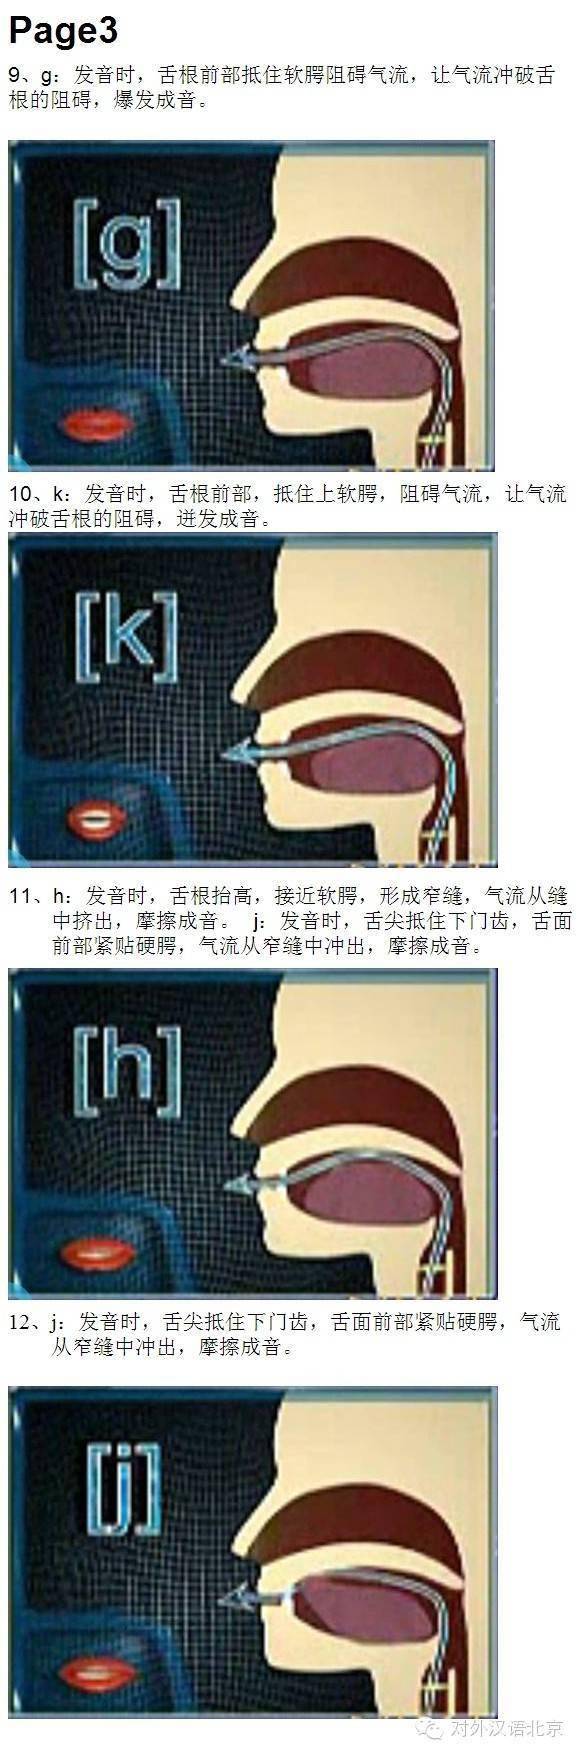 汉语拼音发音口腔图图片